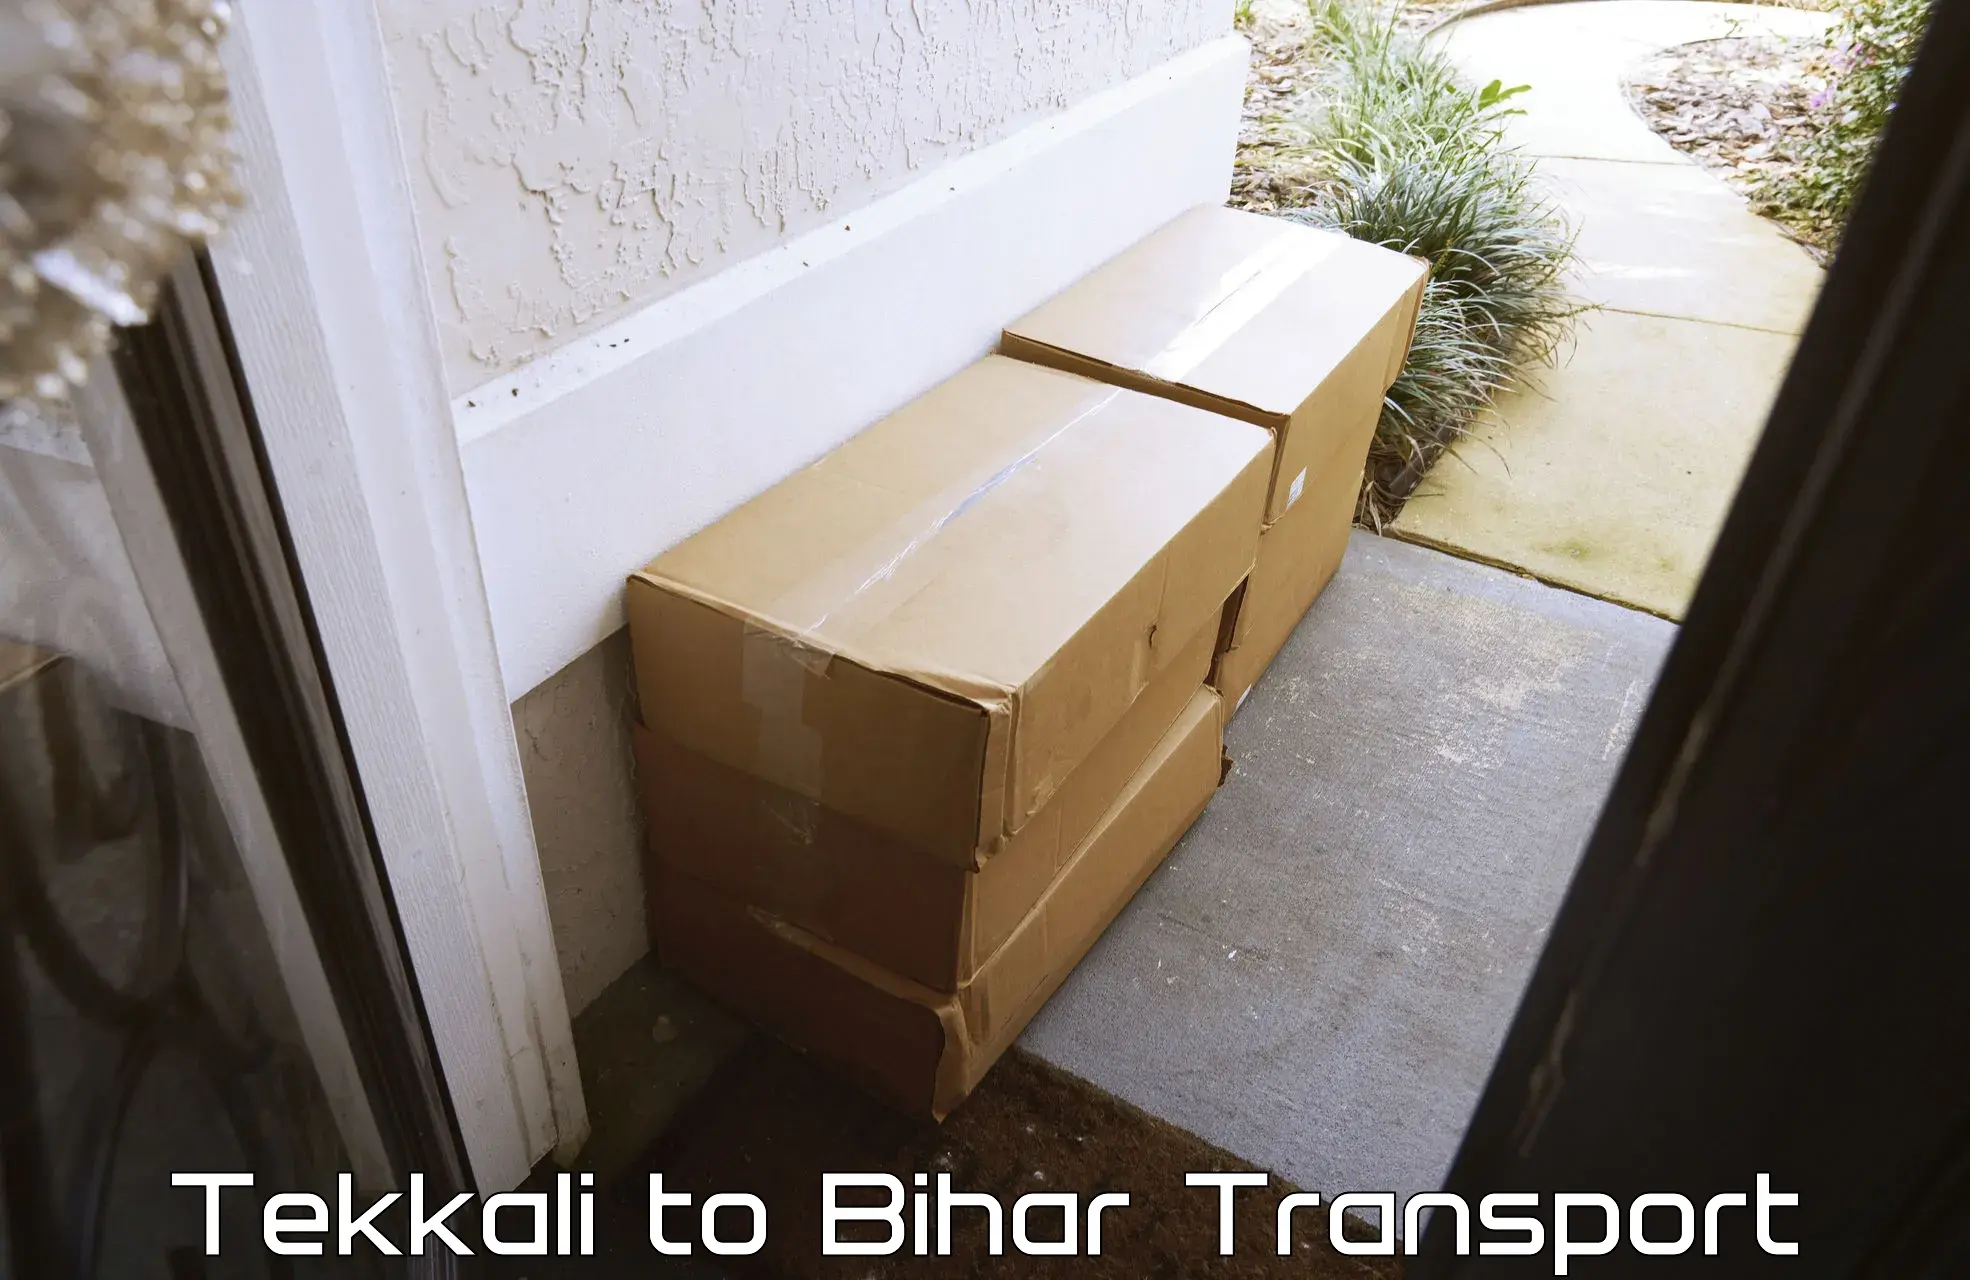 Bike transport service Tekkali to Dholi Moraul